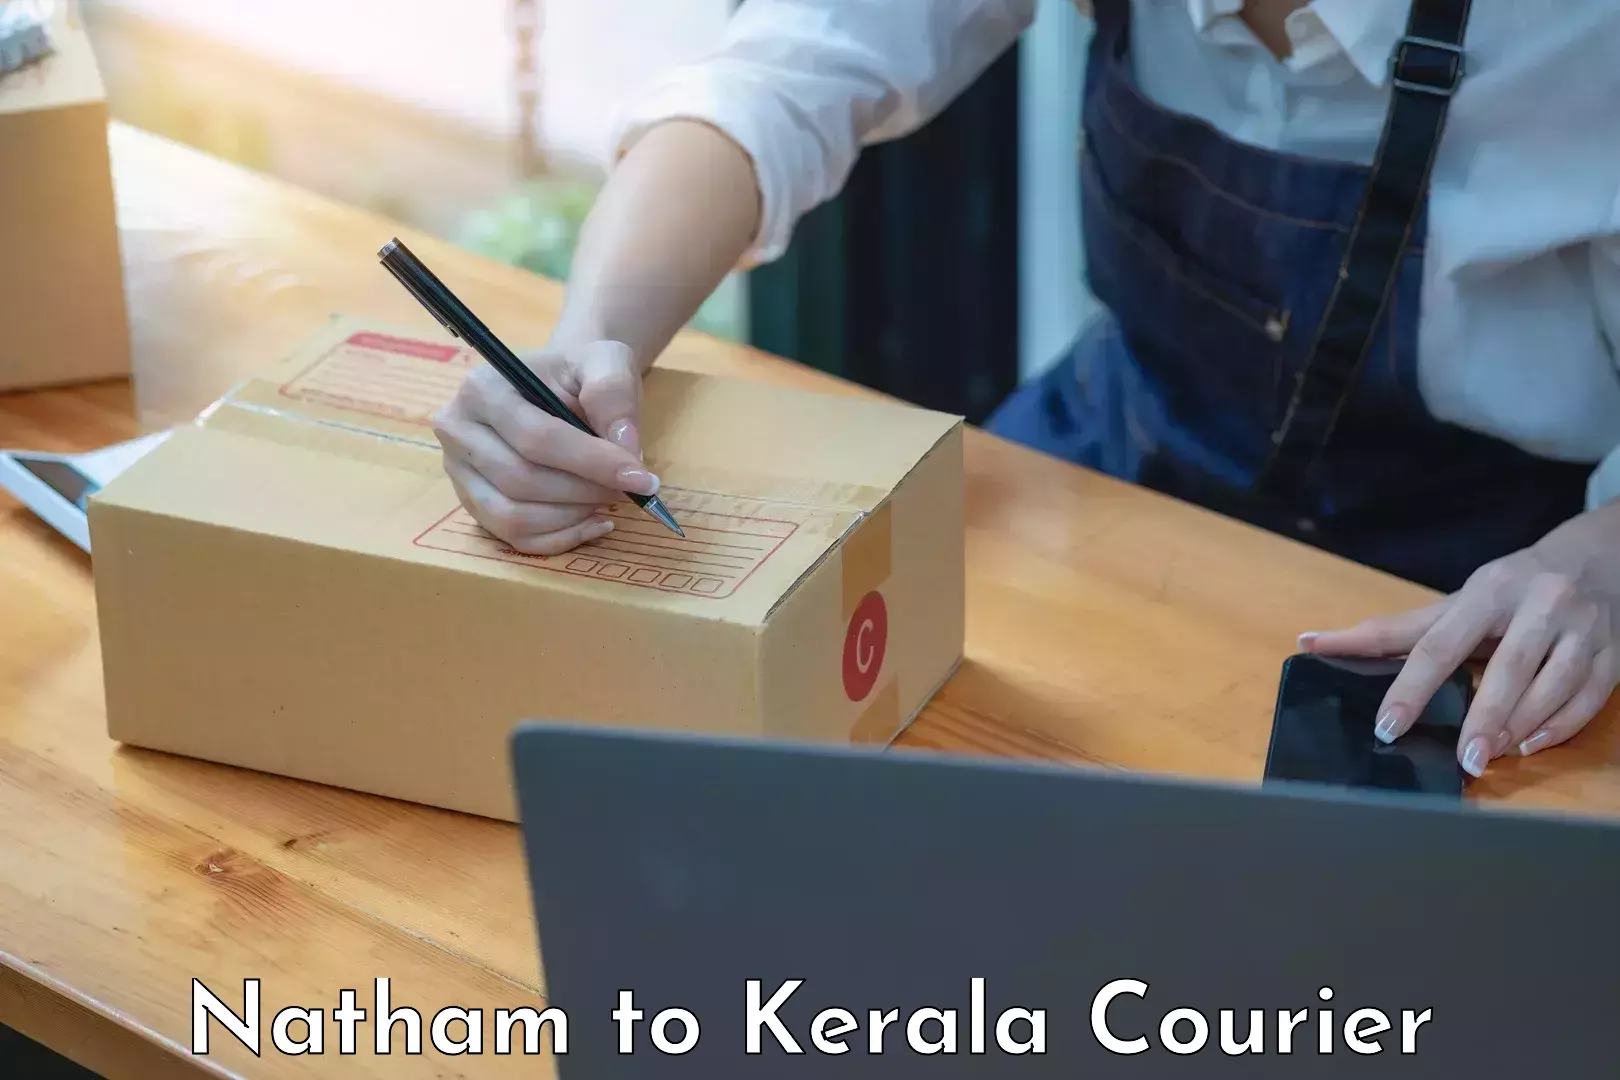 Baggage shipping experience Natham to Kerala